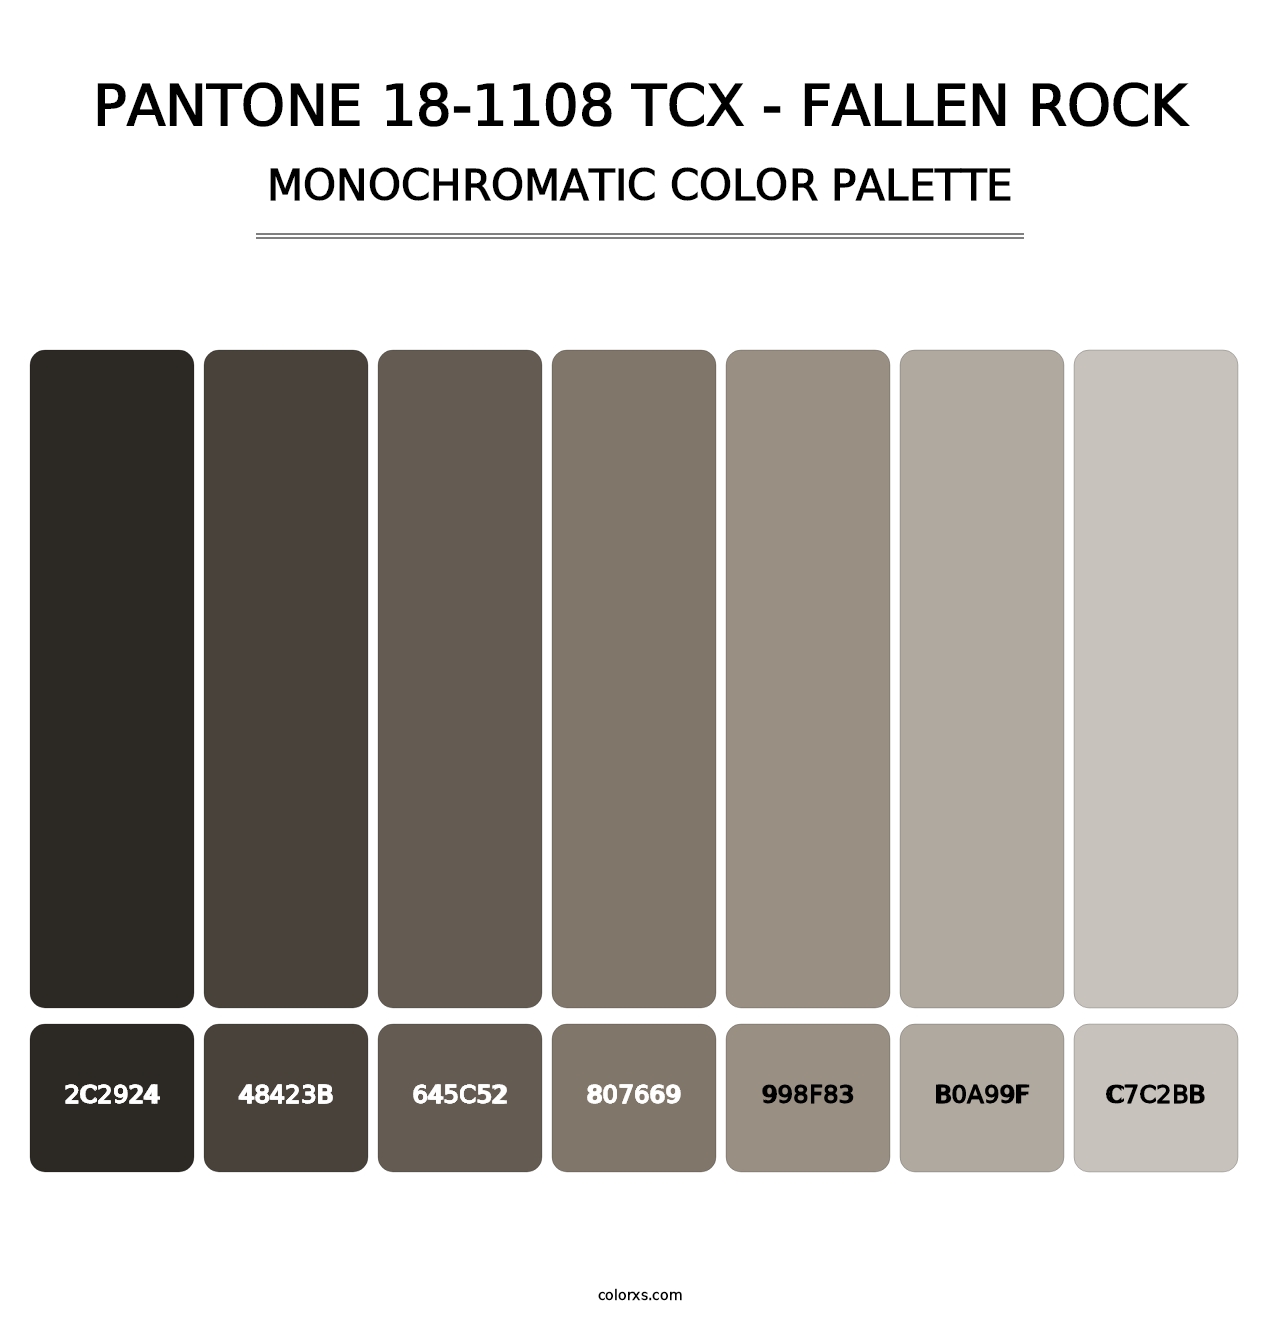 PANTONE 18-1108 TCX - Fallen Rock - Monochromatic Color Palette